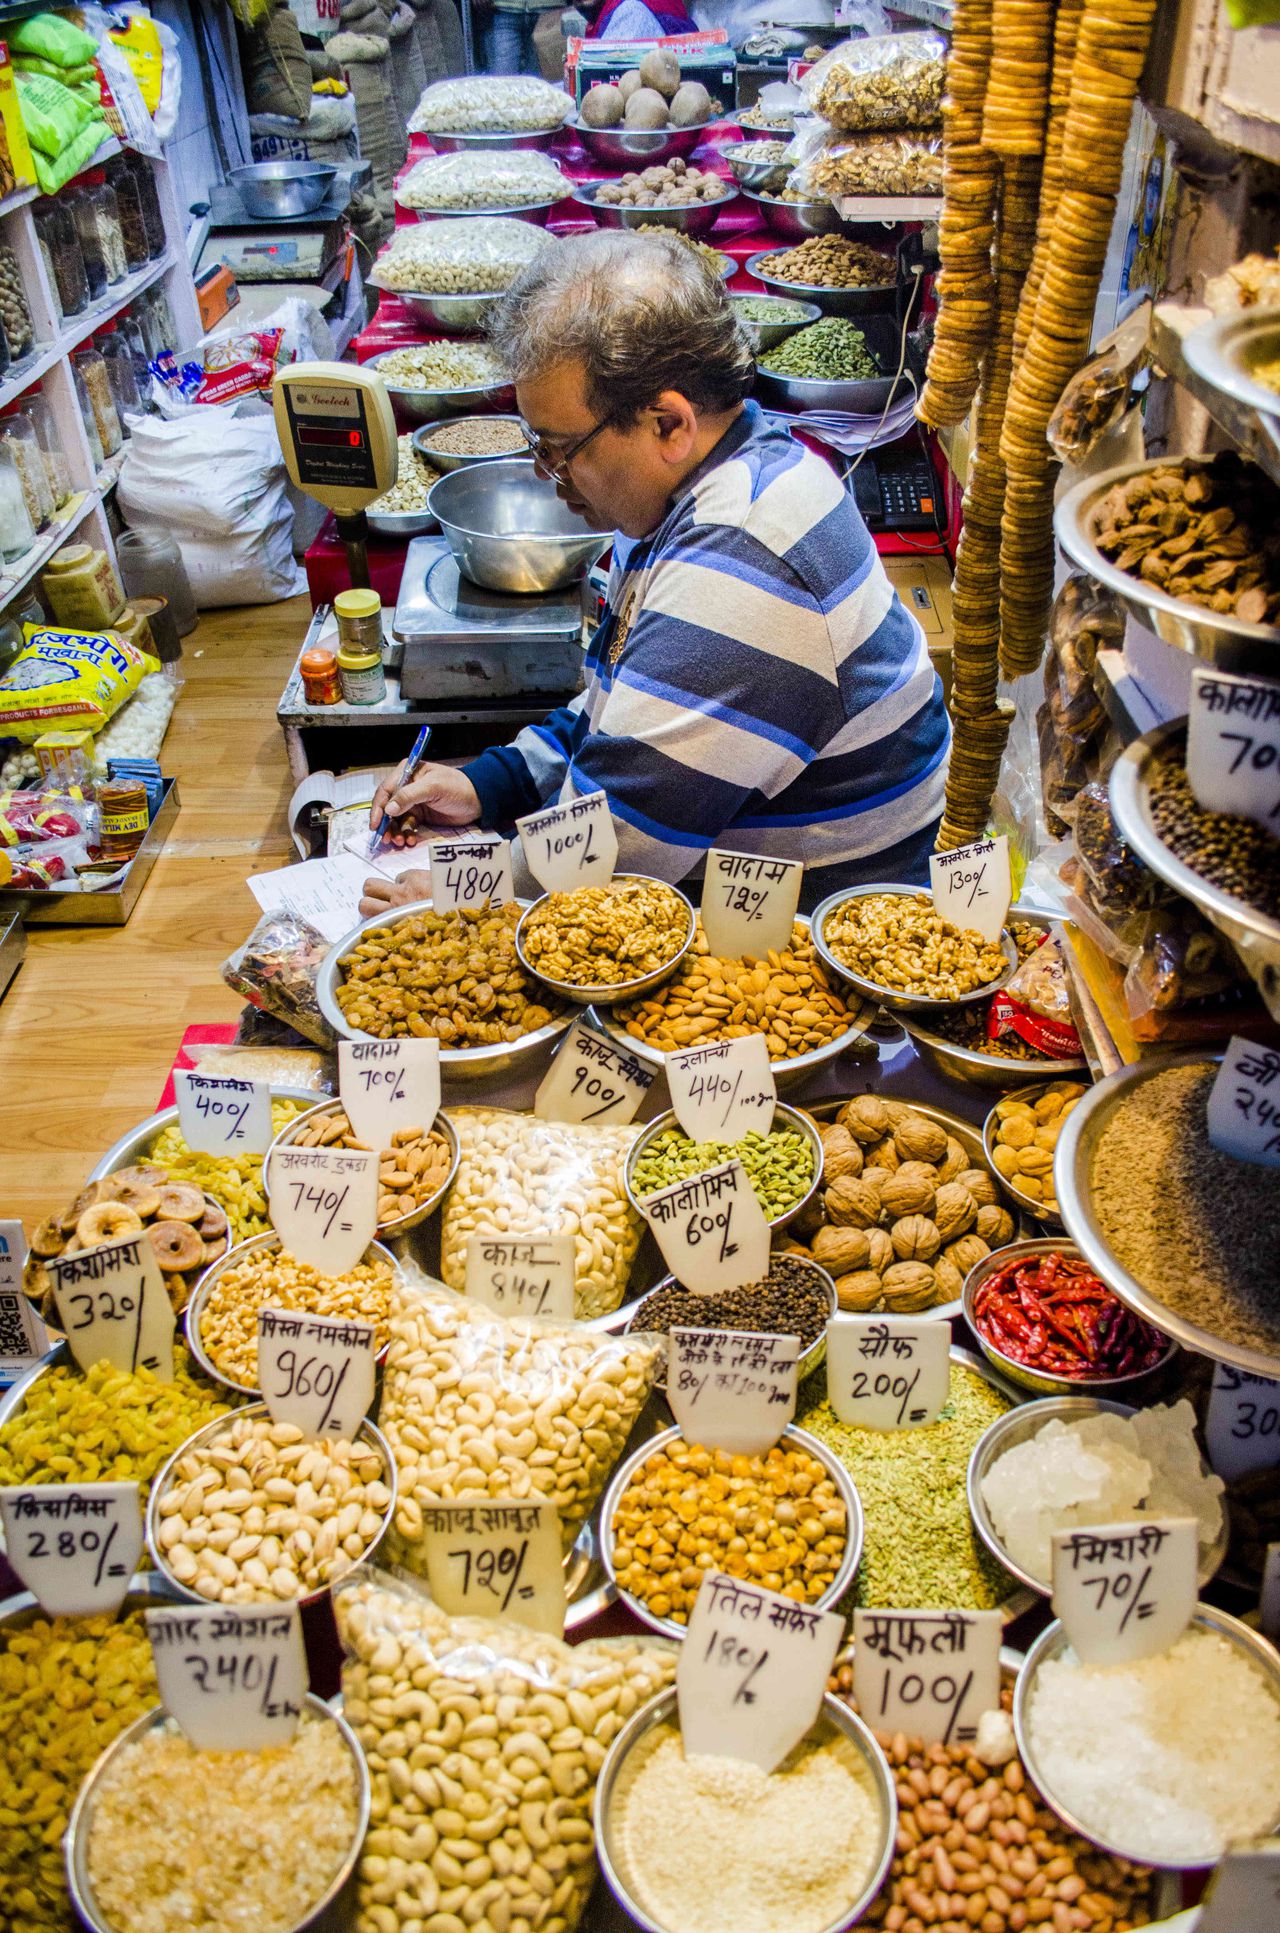 Este comerciante ofrece en su local curry, pimienta negra, pistachos, anís, ajonjolí y pasas, son algunas de las especias y frutos secos. Fotografía: Katerine Lara Rojas